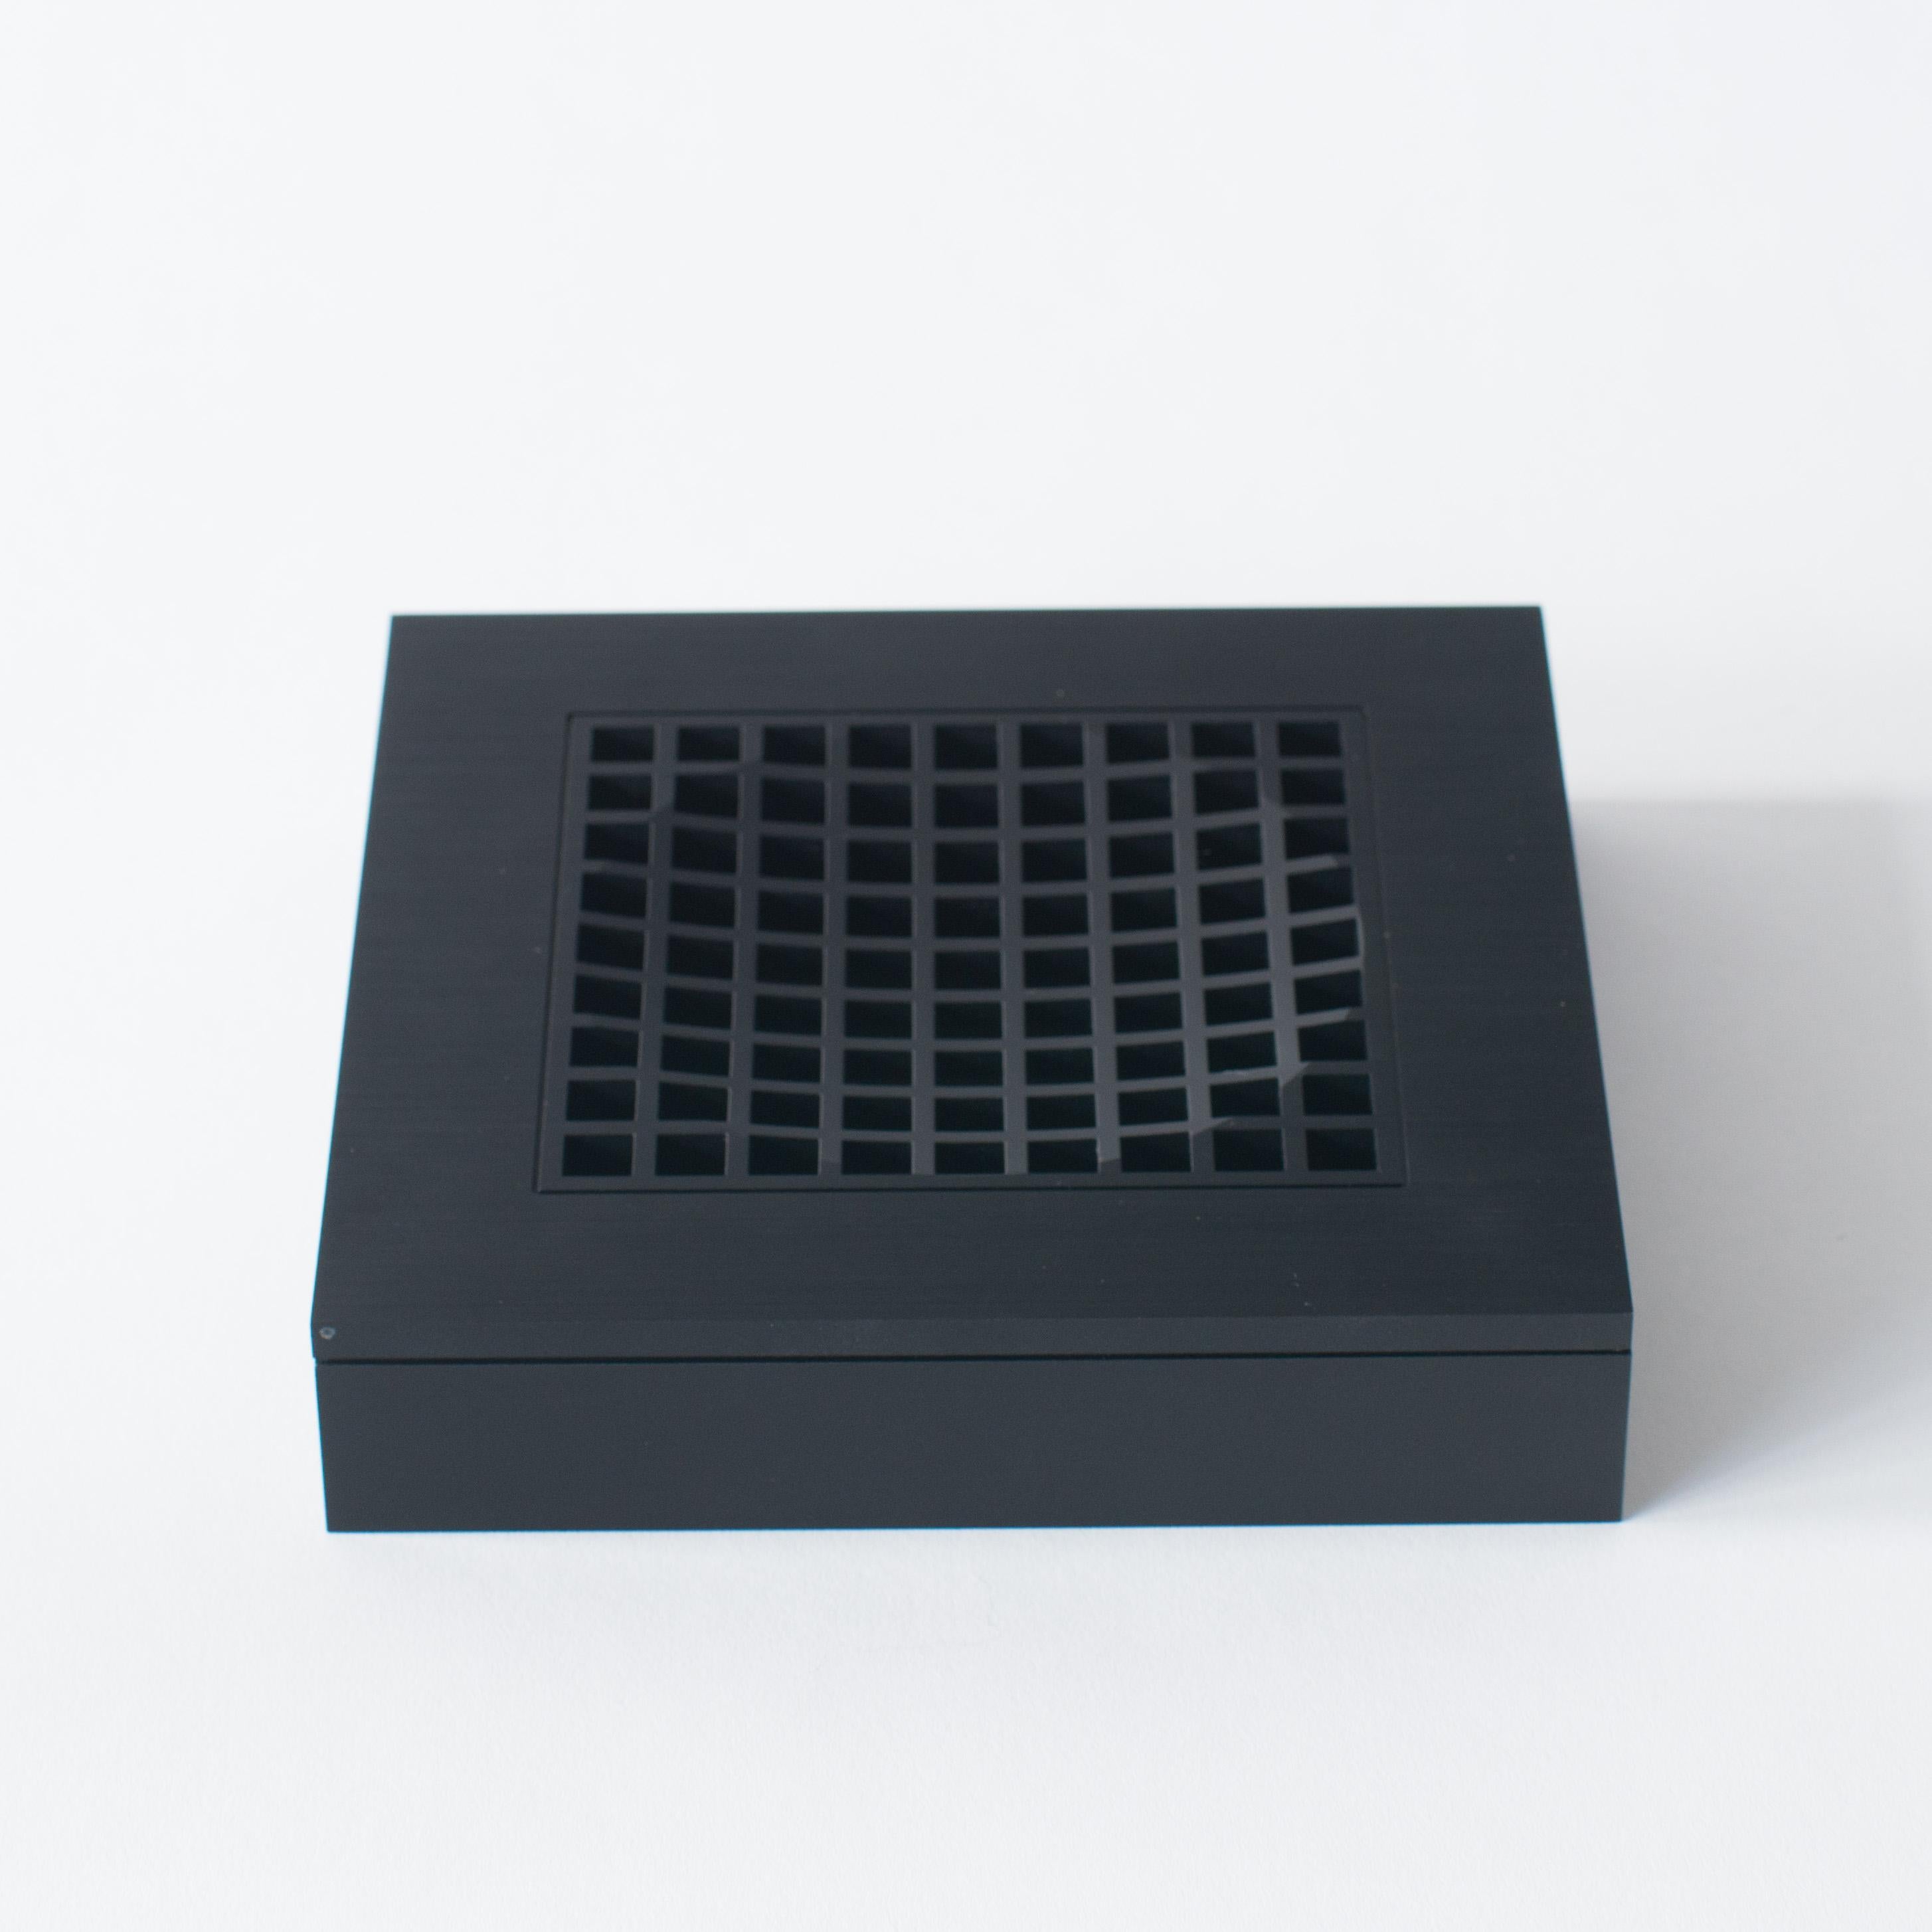 Der Aschenbecher von Shiro Kuramata1. Hergestellt aus schwarzem Aluminium.
Eher optisches Kunstobjekt als üblicher Irrläufer. 


  
  